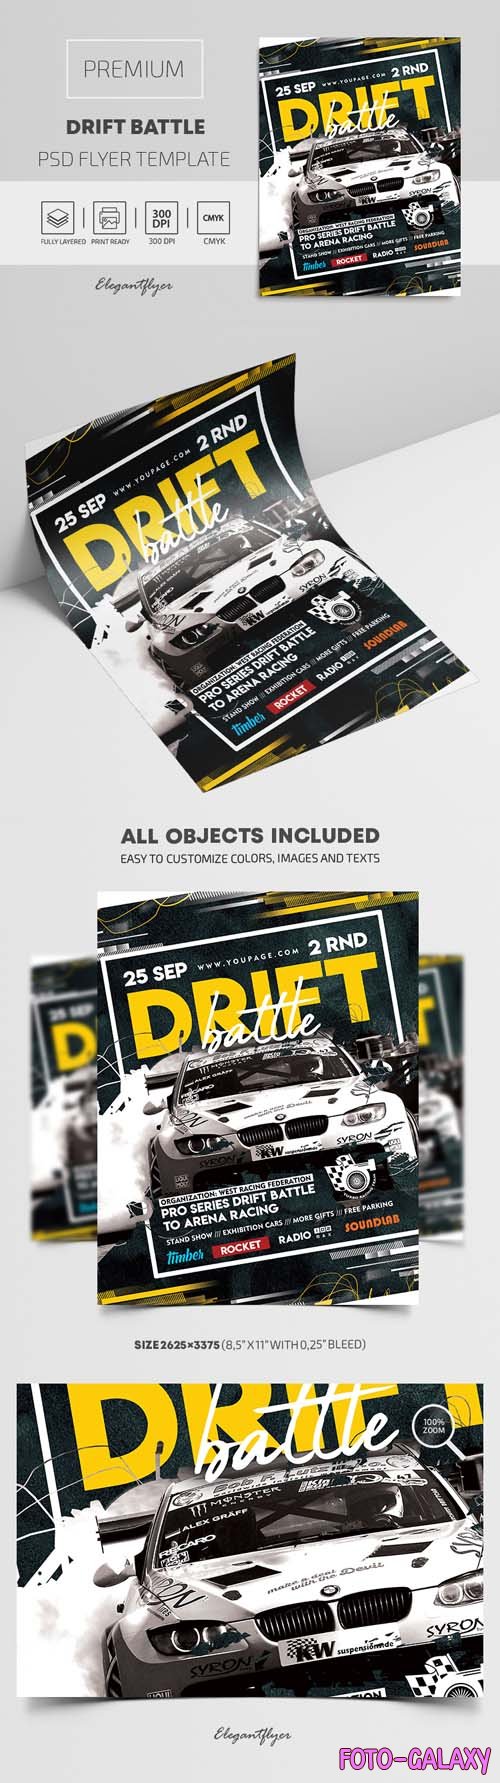 Drift Battle PSD Flyer